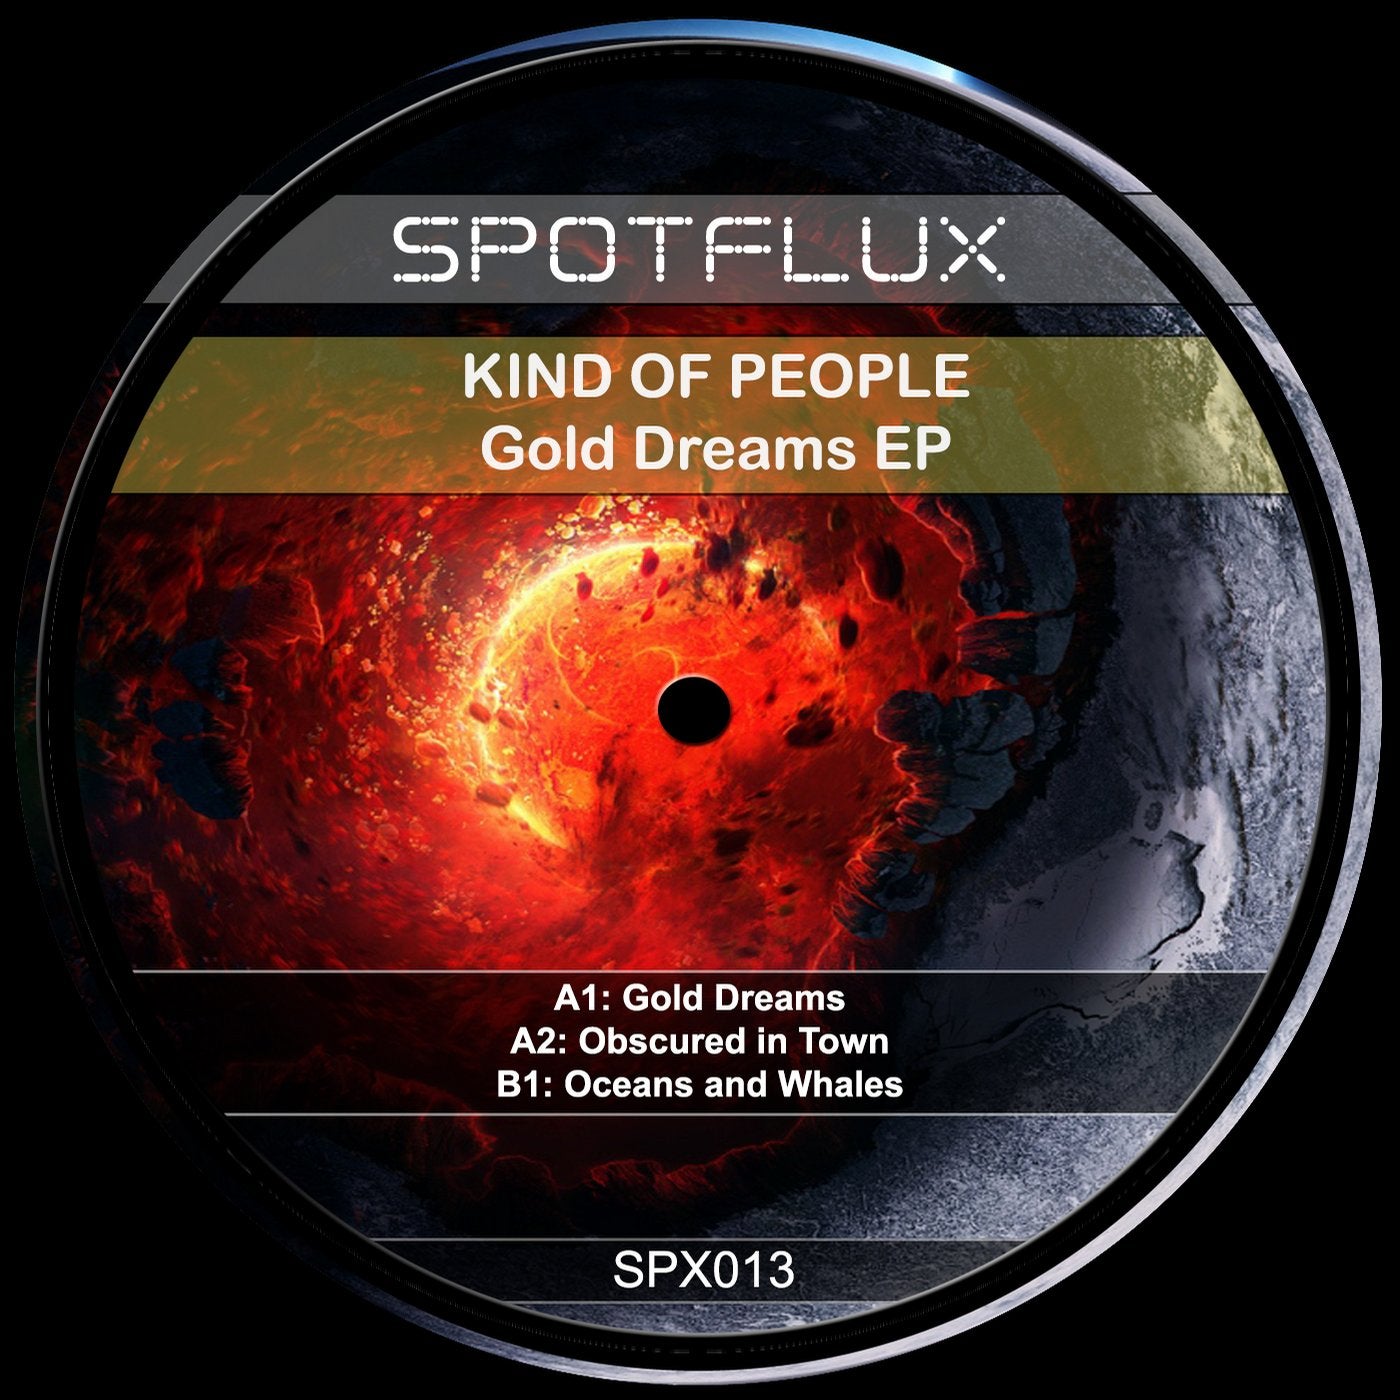 Gold Dreams EP